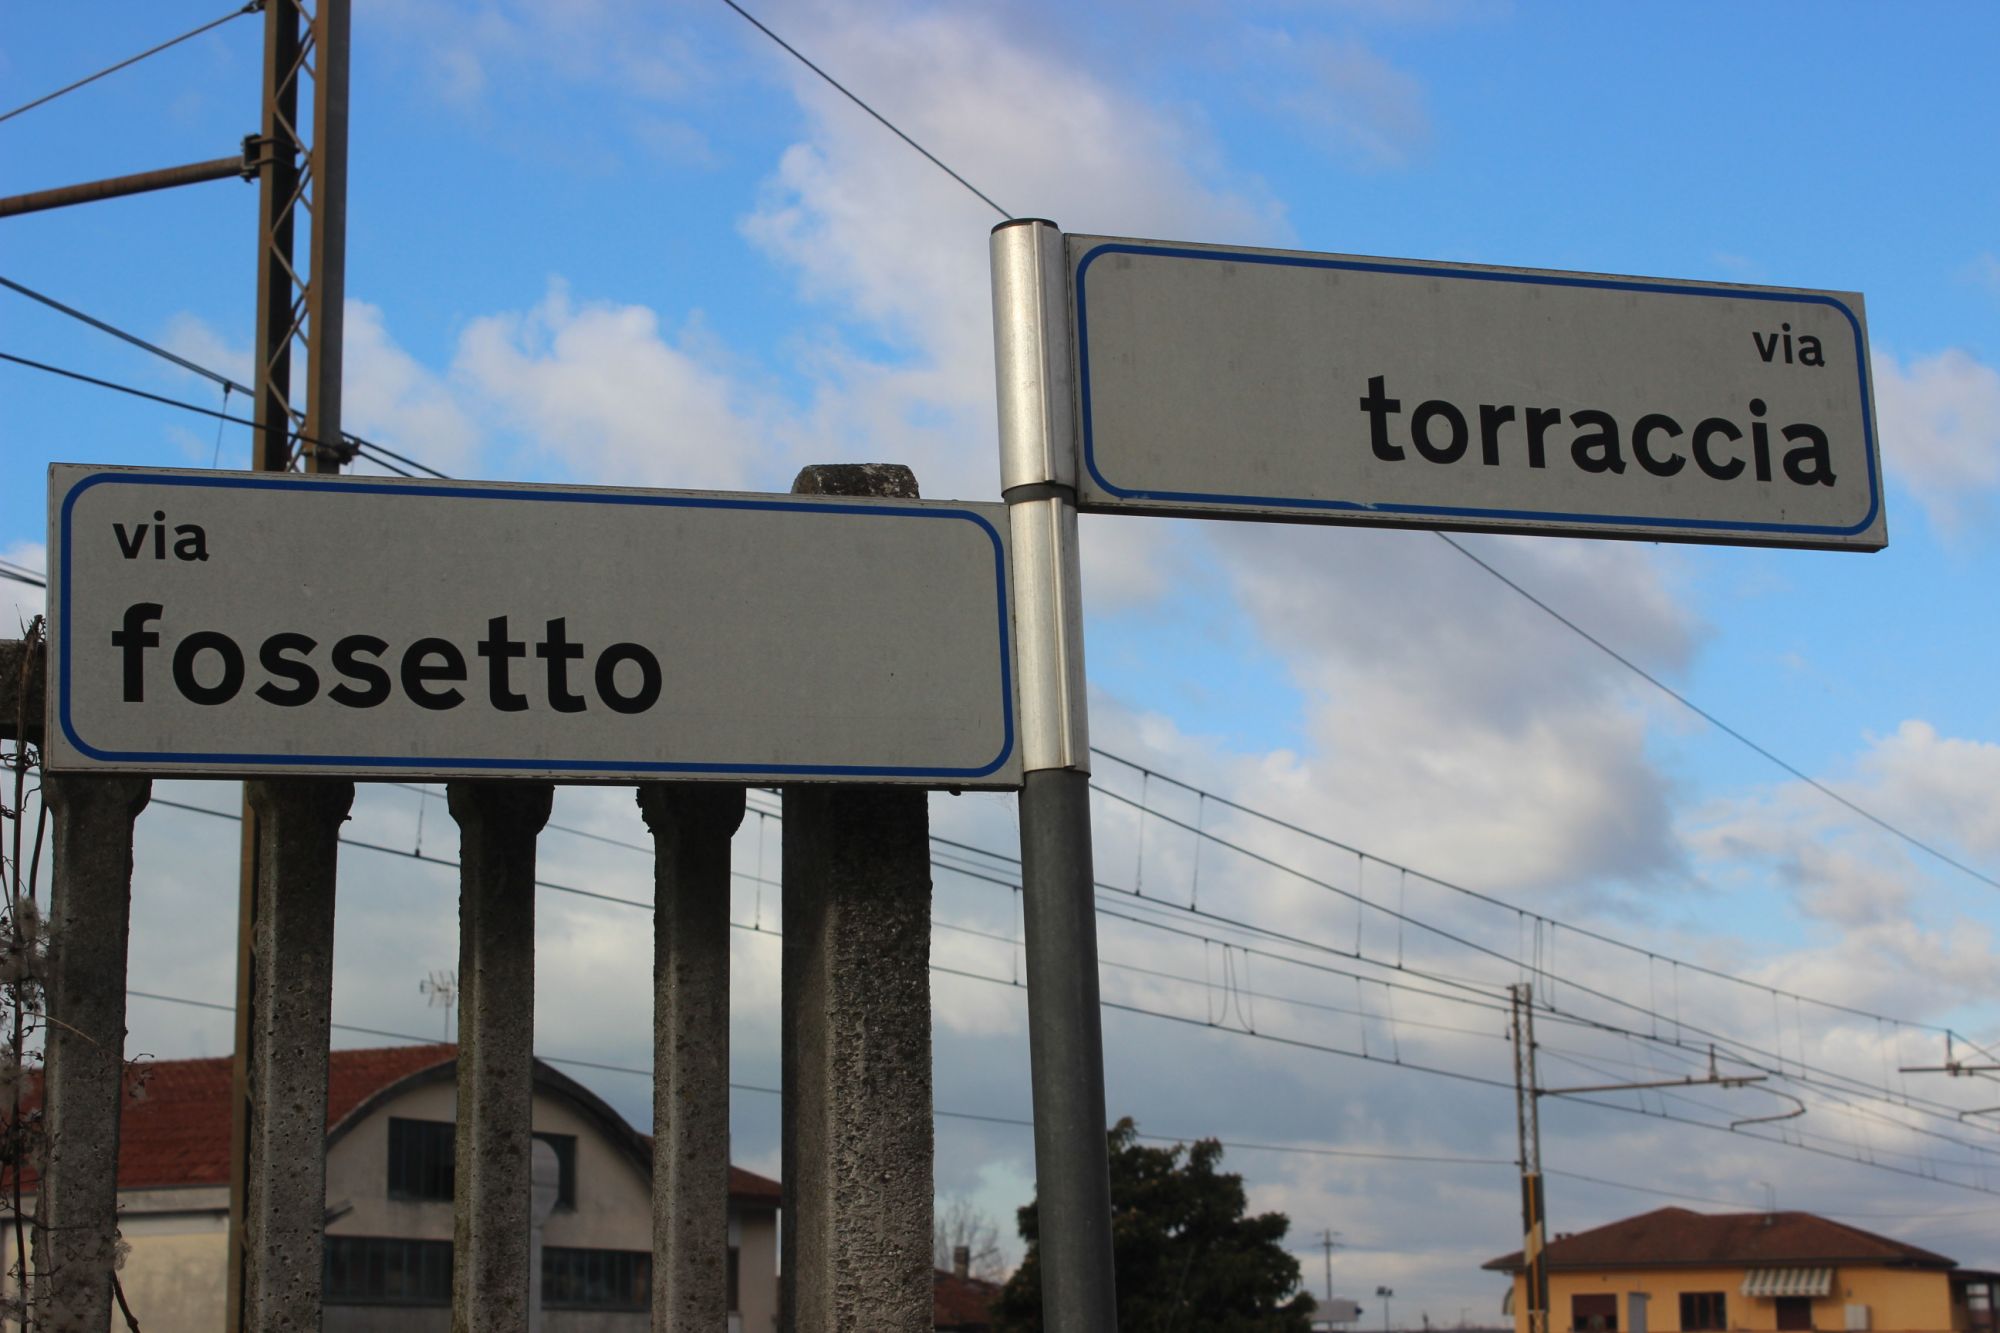 Tre attraversamenti pedonali rialzati lungo via Torraccia e via Fossetto